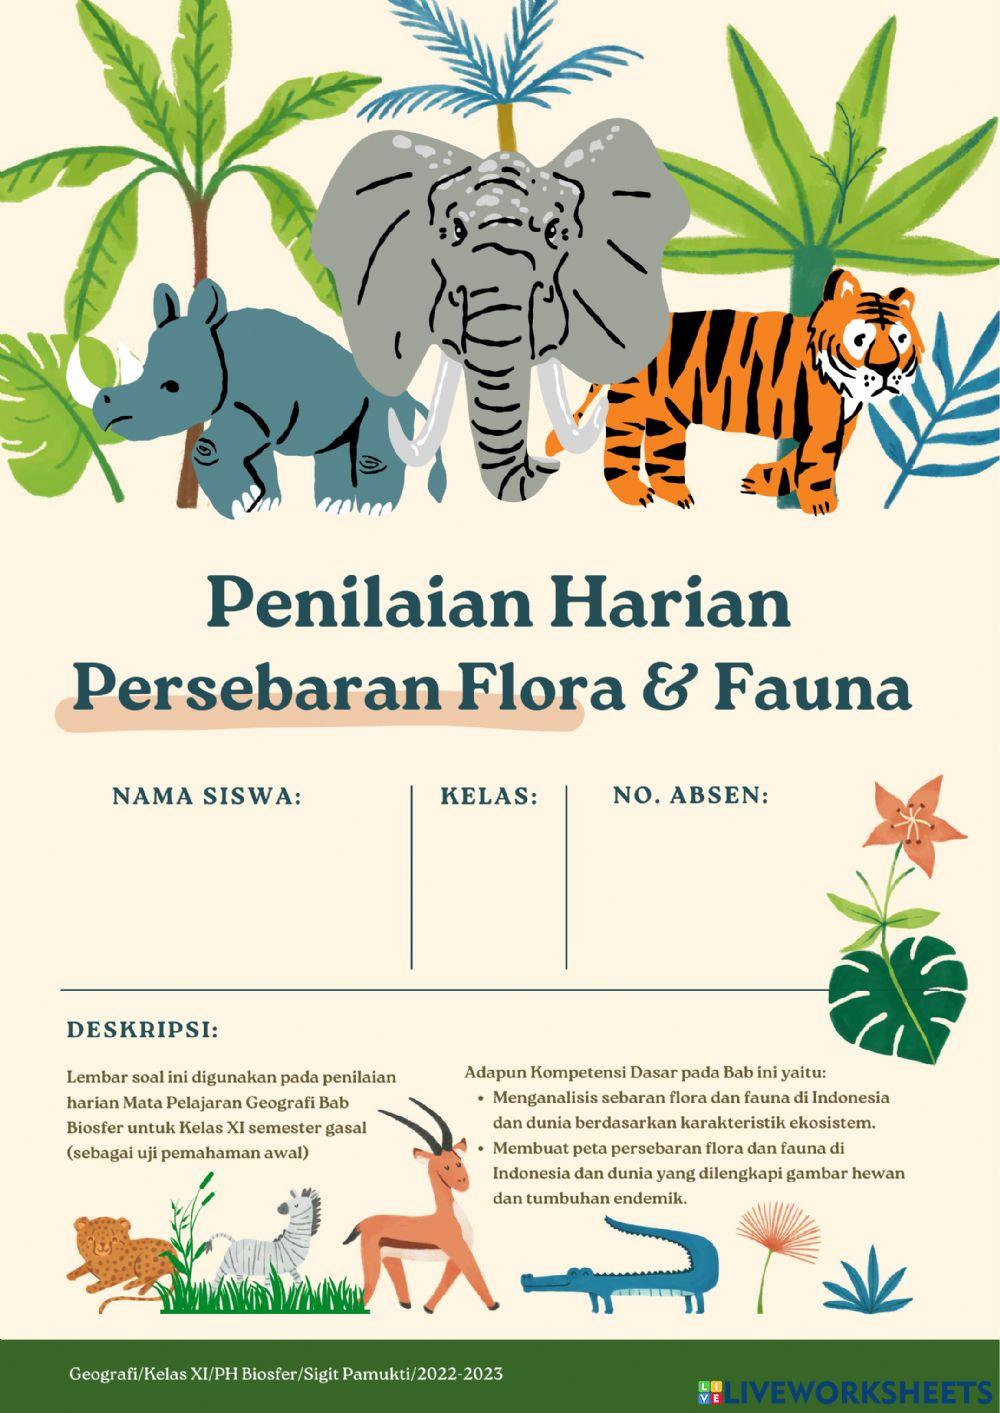 Sigit Pamukti Flora Fauna worksheet | Live Worksheets